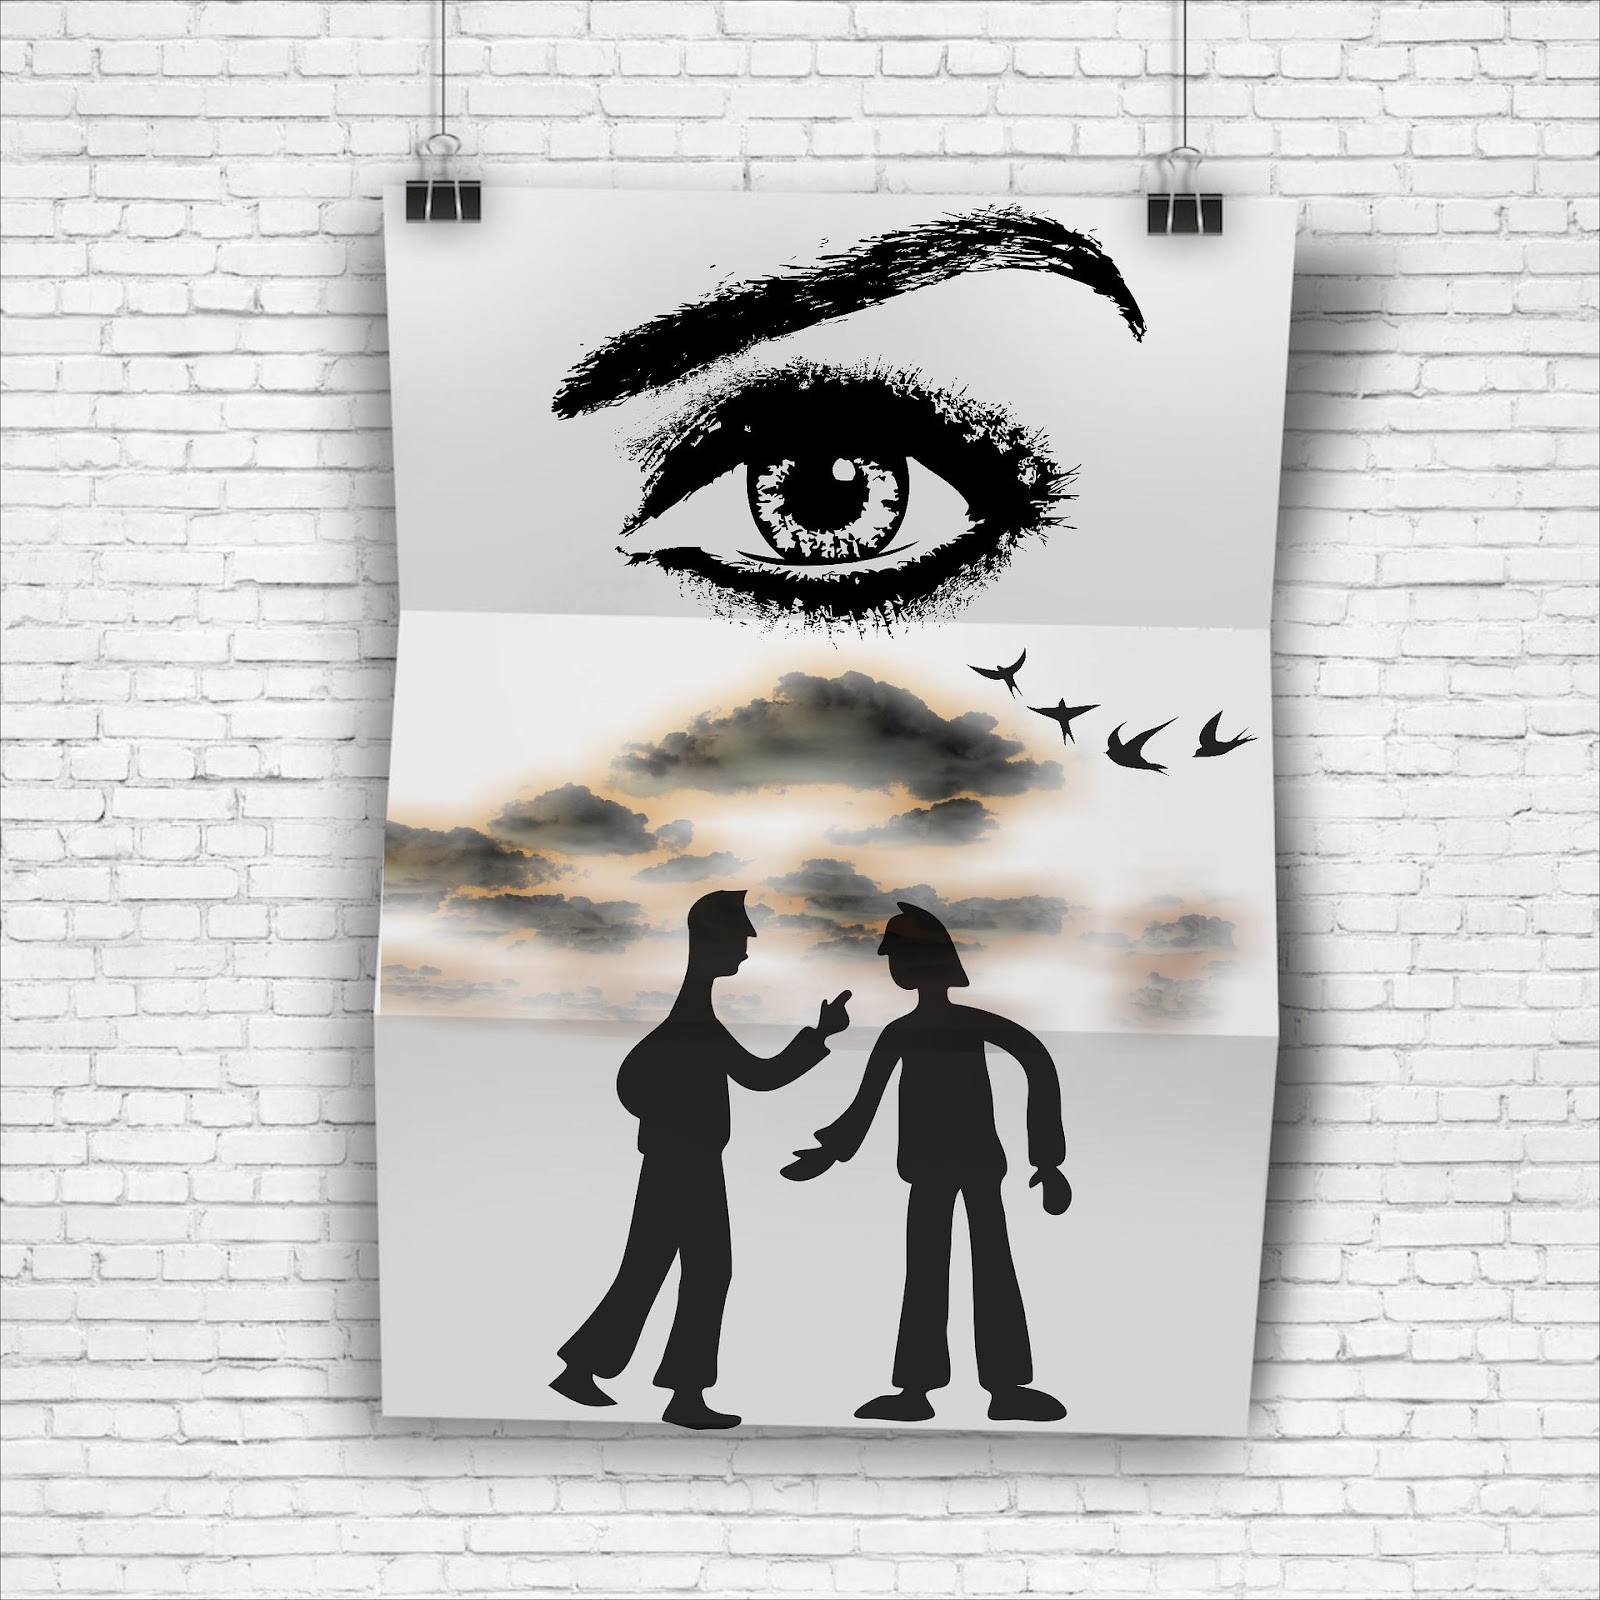 Un grand œil aux sourcils arqués dessiné au-dessus d'une scène de deux personnes gesticulant, probablement en train de se disputer.